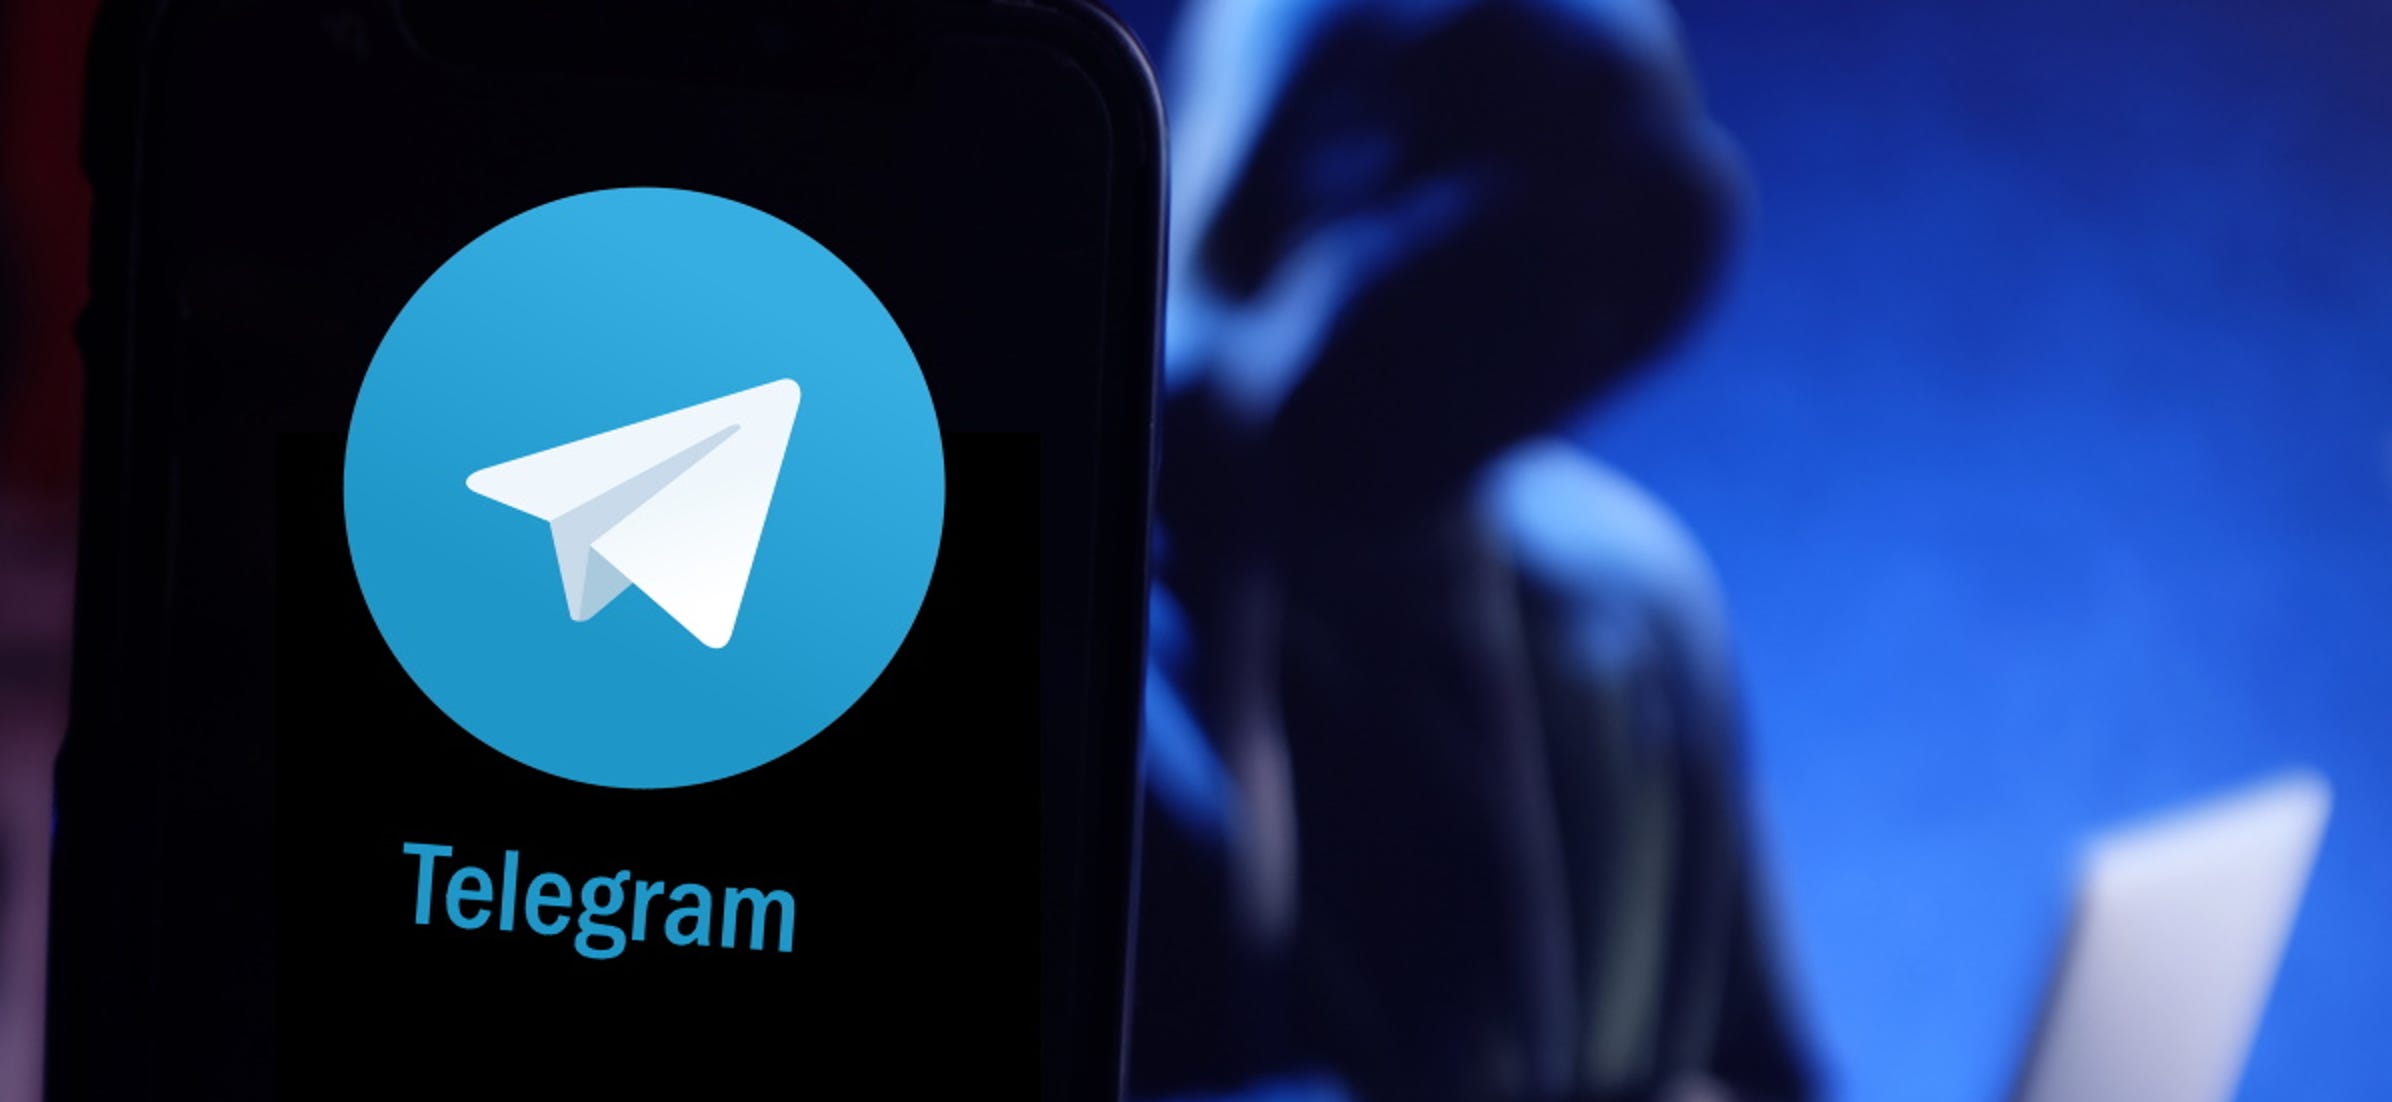 یک بدافزار جدید کشف شده از با استفاده از شیوه کار تلگرام افراد مورد نظر را هدف قرار می‌دهد